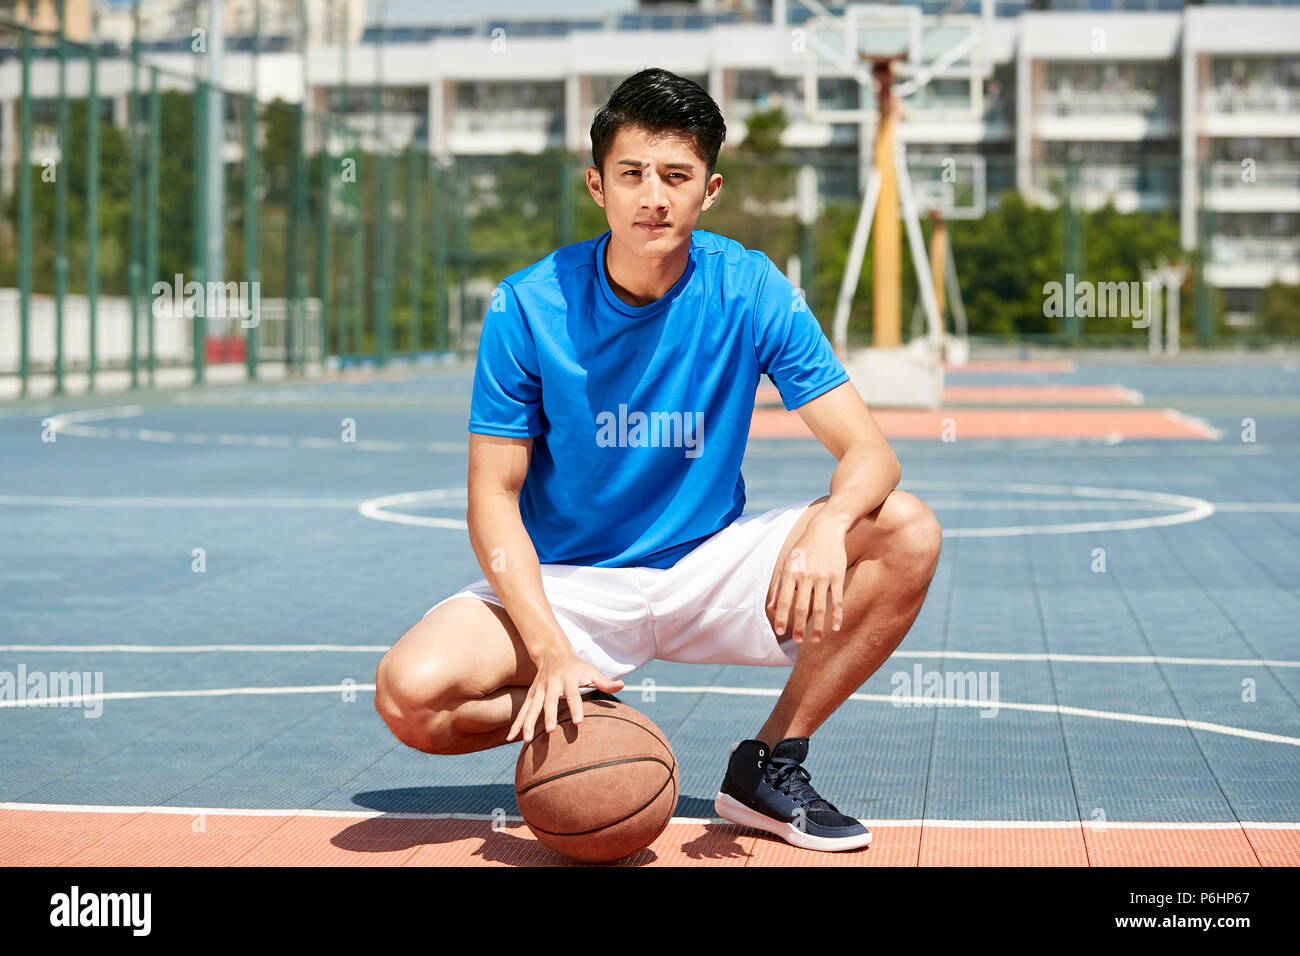 Portrait de plein air d'un jeune joueur de basket-ball masculin asiatique Banque D'Images